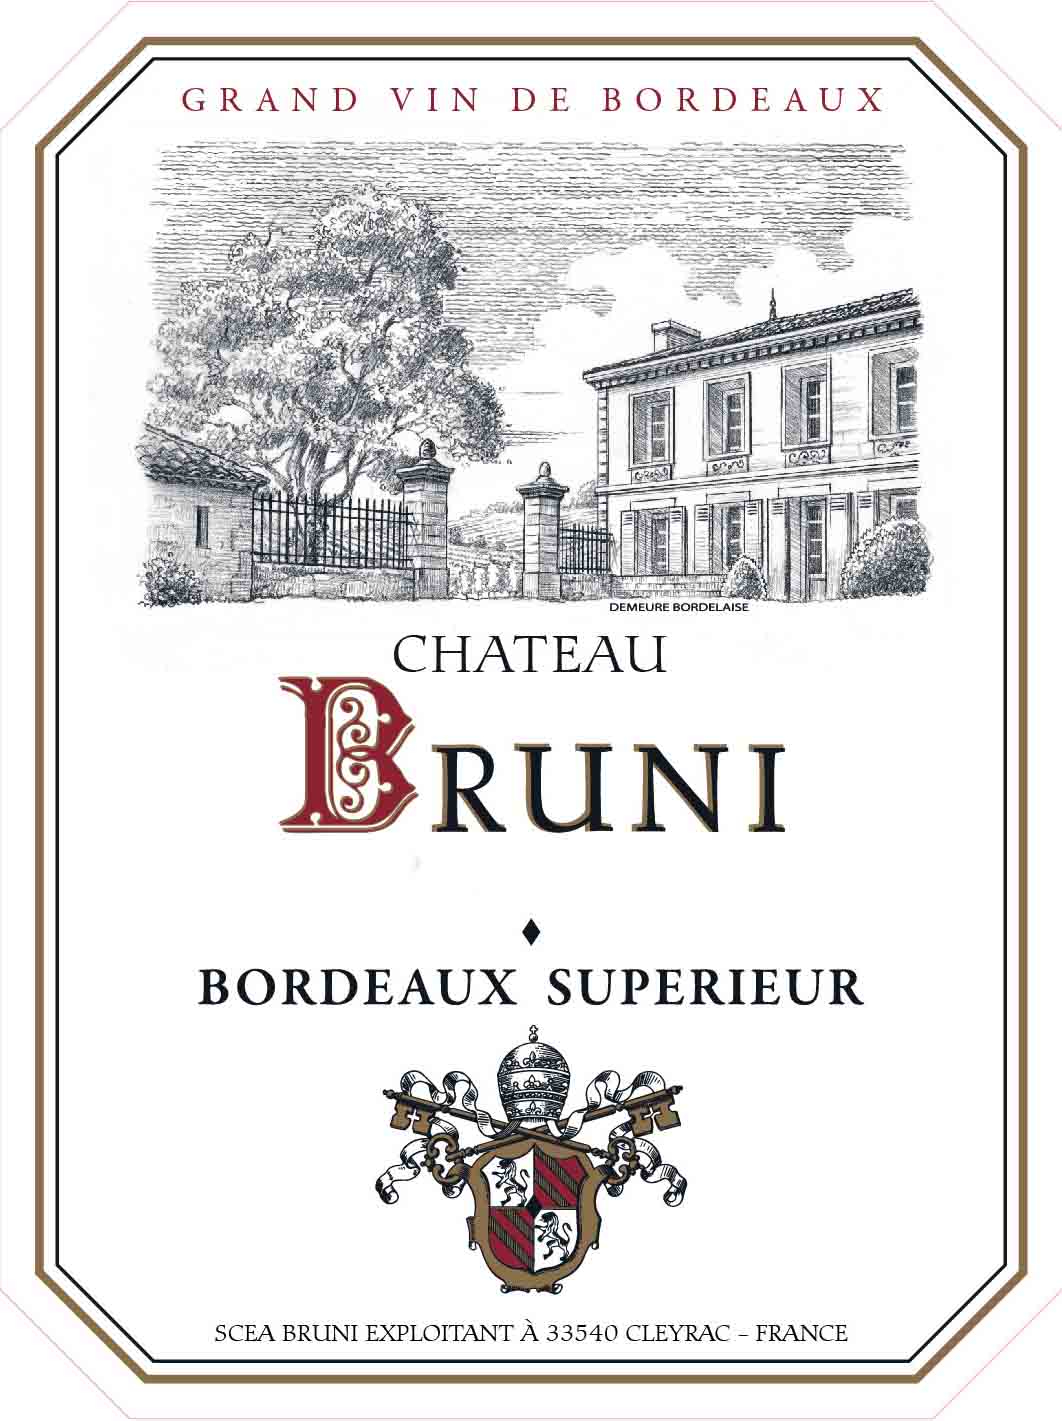 Chateau Bruni - Bordeaux Superior label